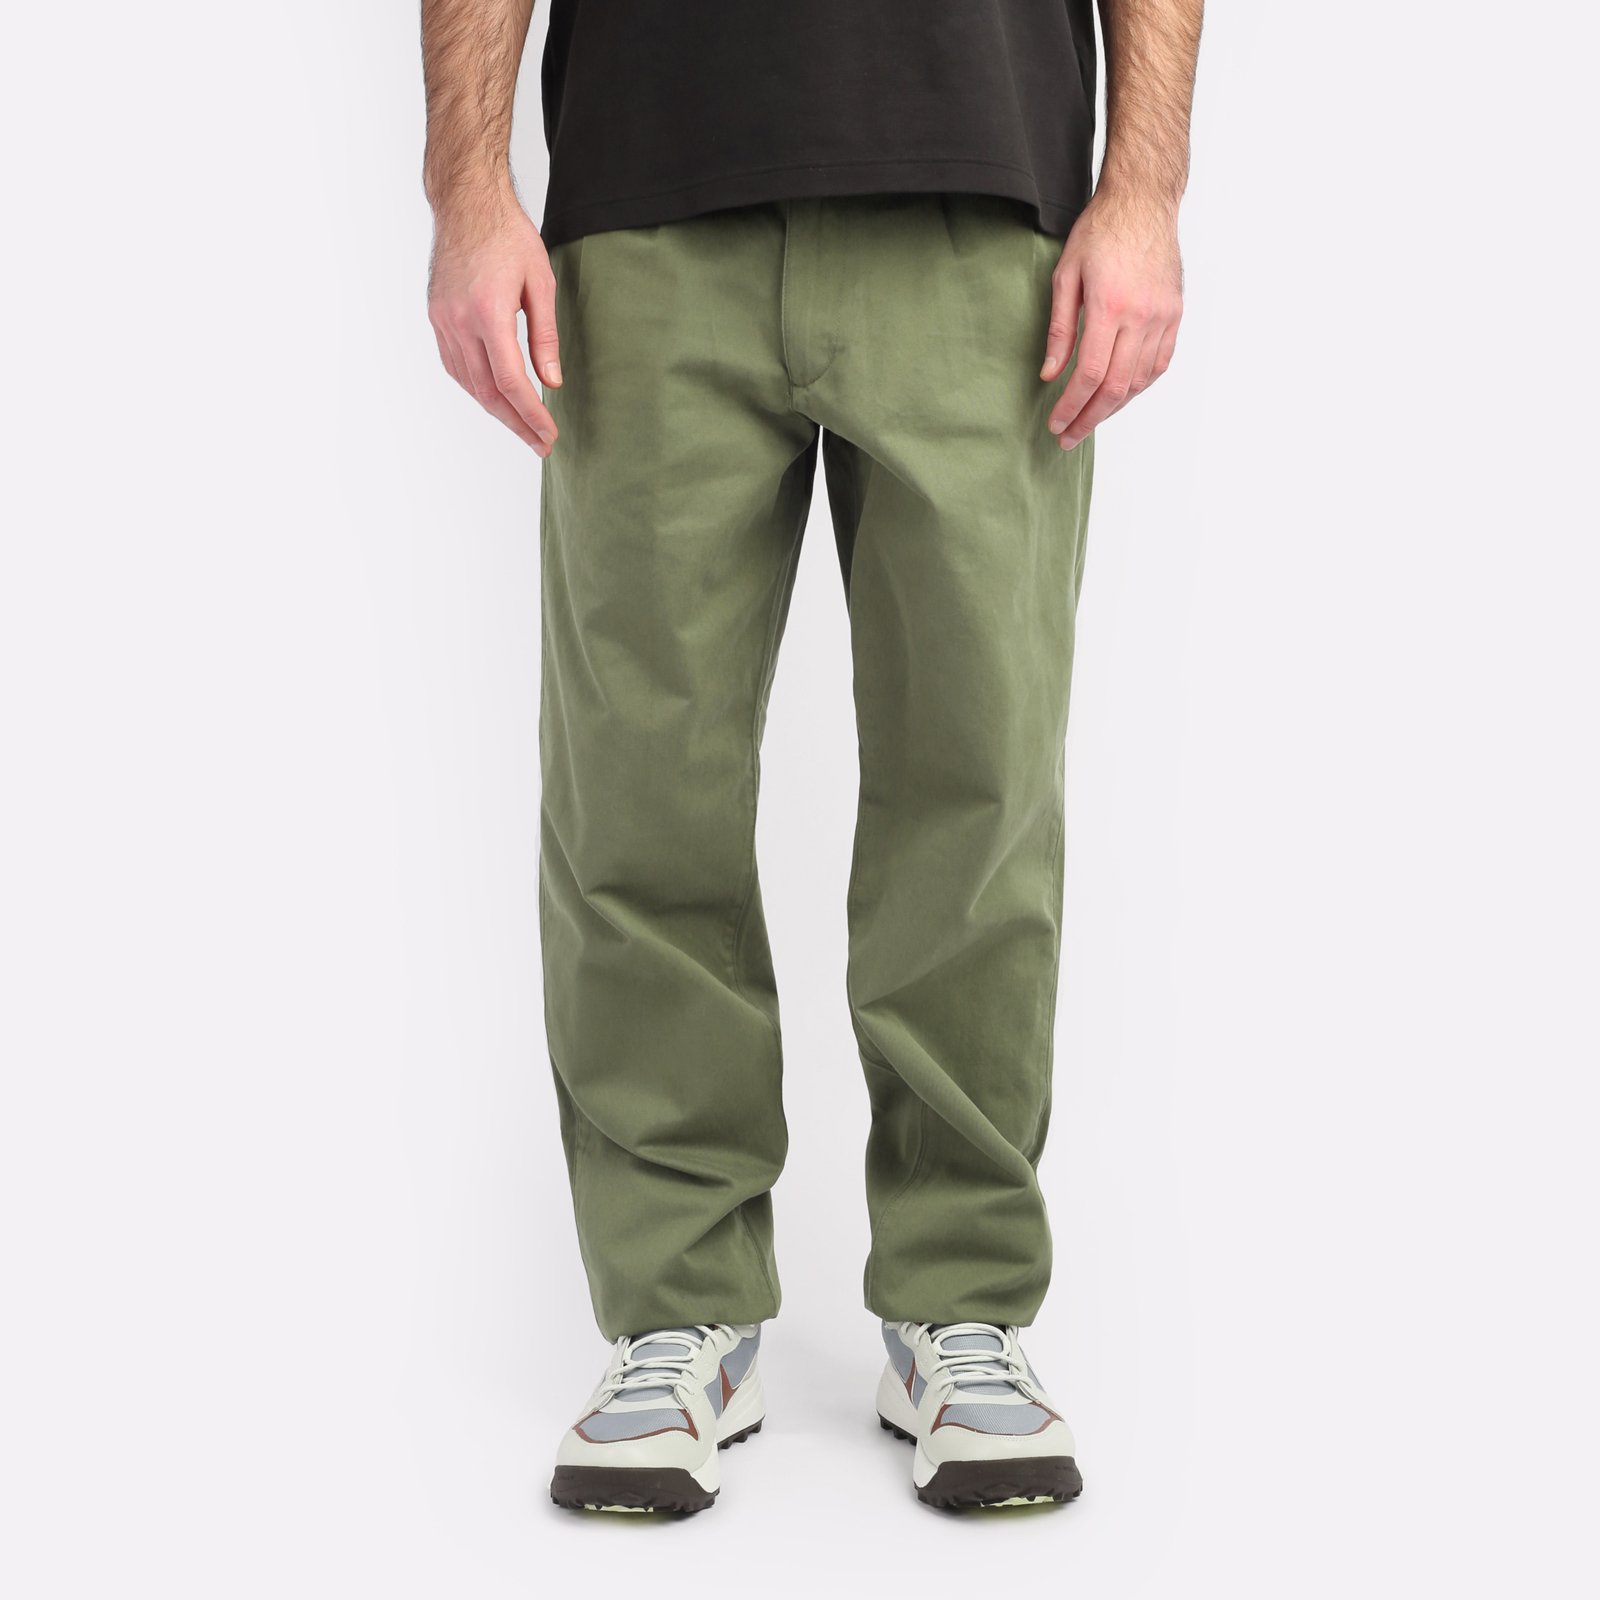 мужские зеленые брюки Alpha Industries Classic Trousers MBC53500CO-green - цена, описание, фото 1